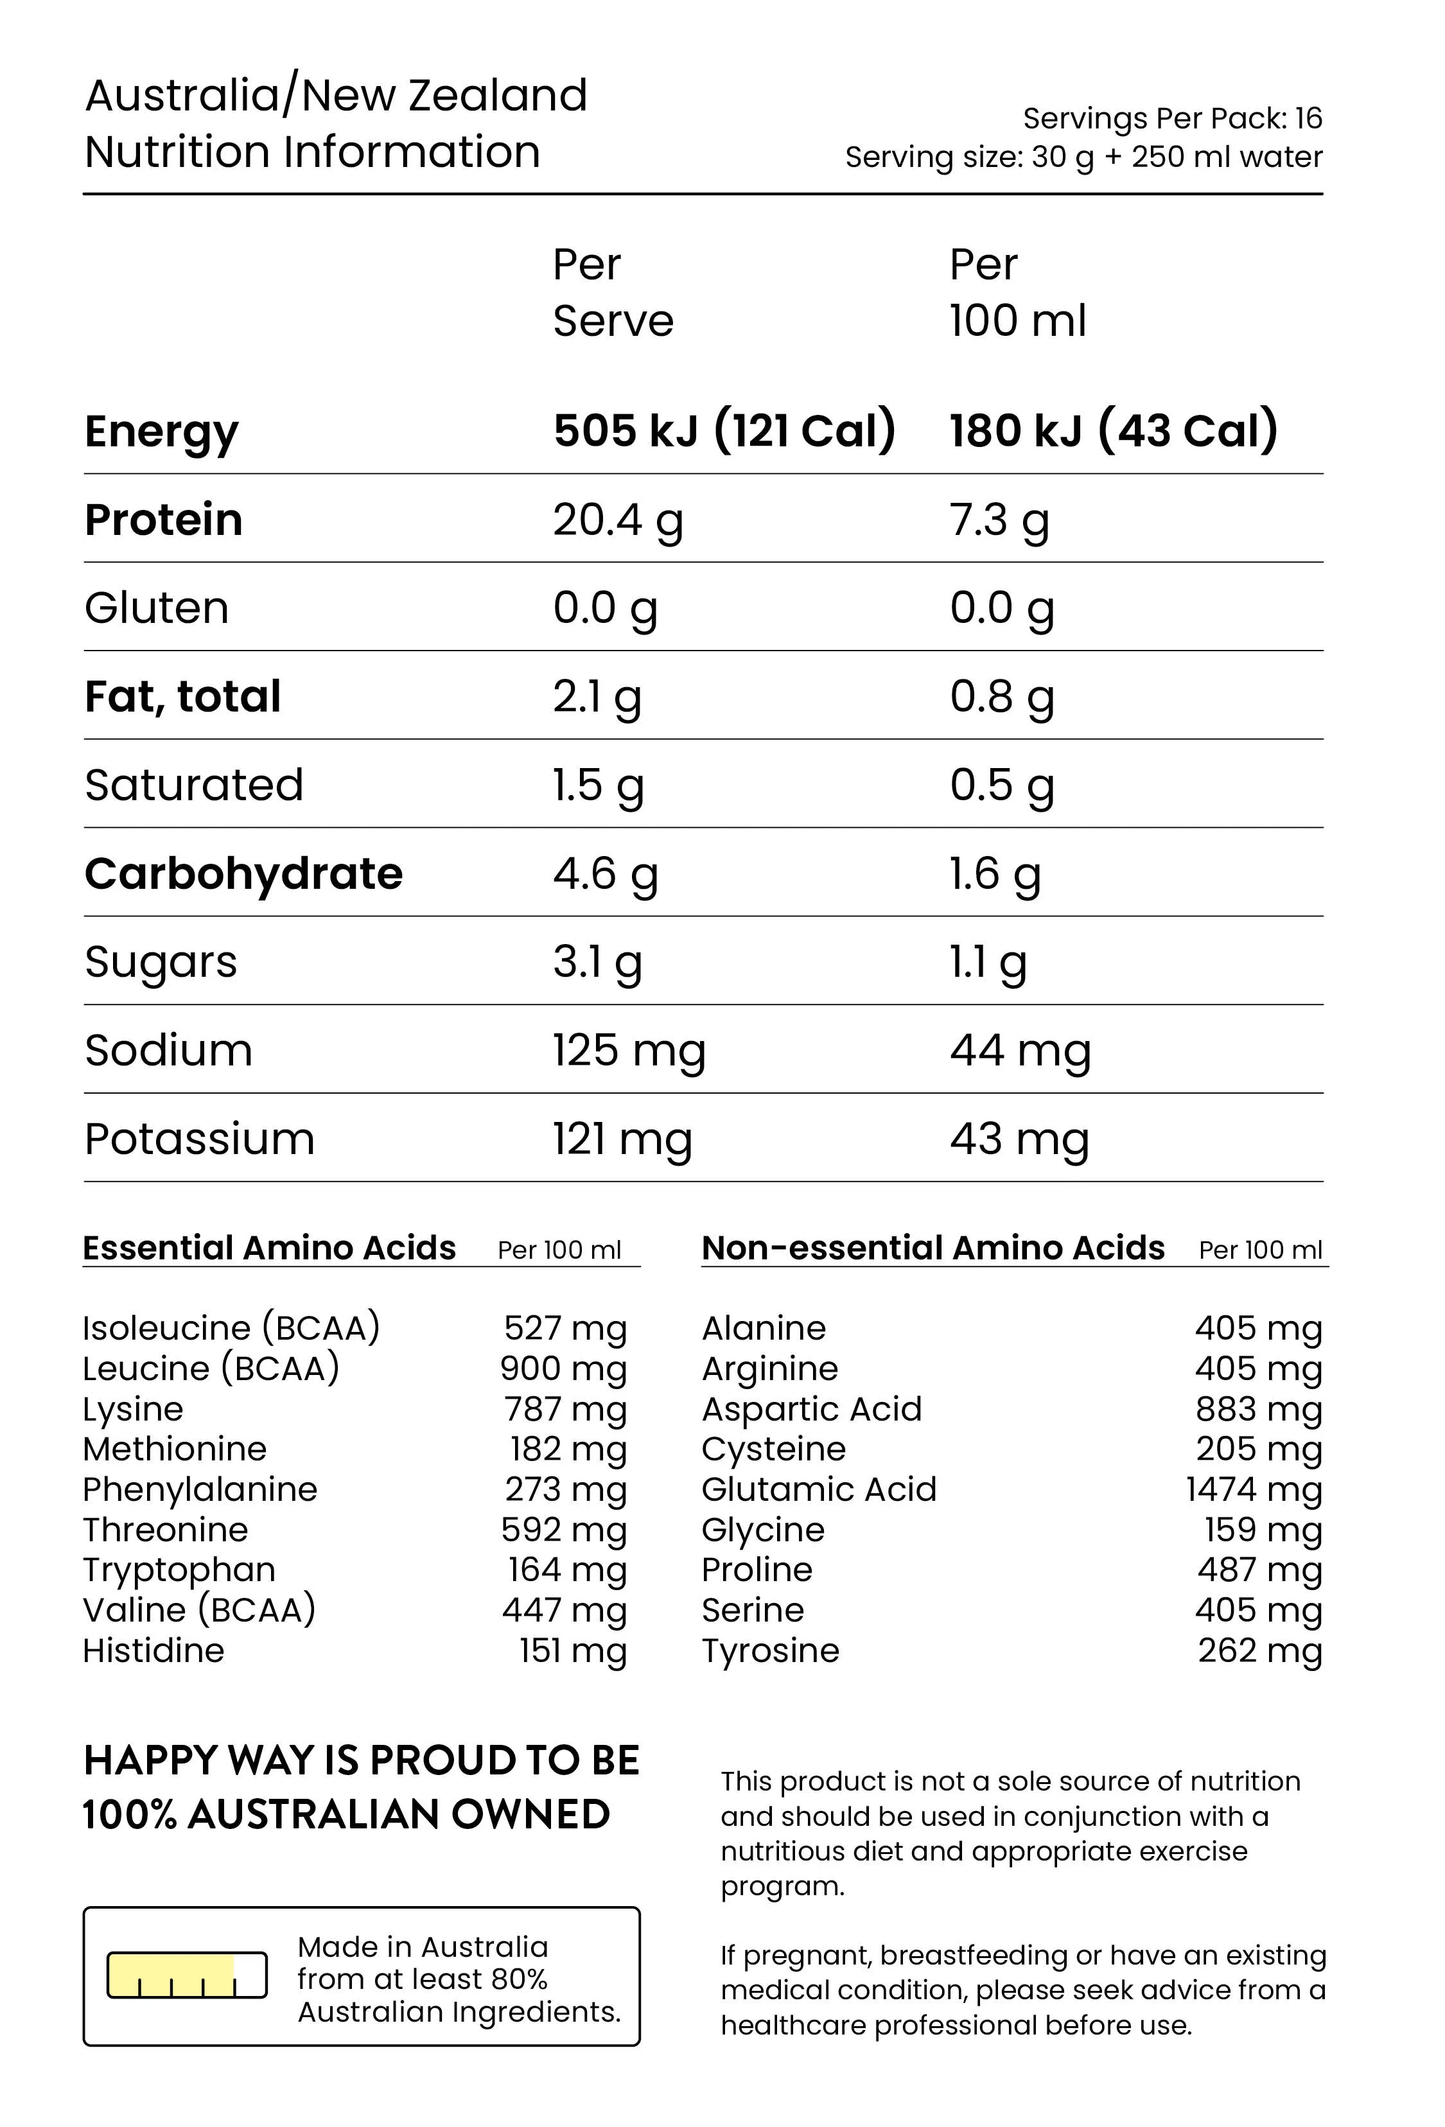 Happy Way Whey Protein Powder 500g, Caramel Biscuit